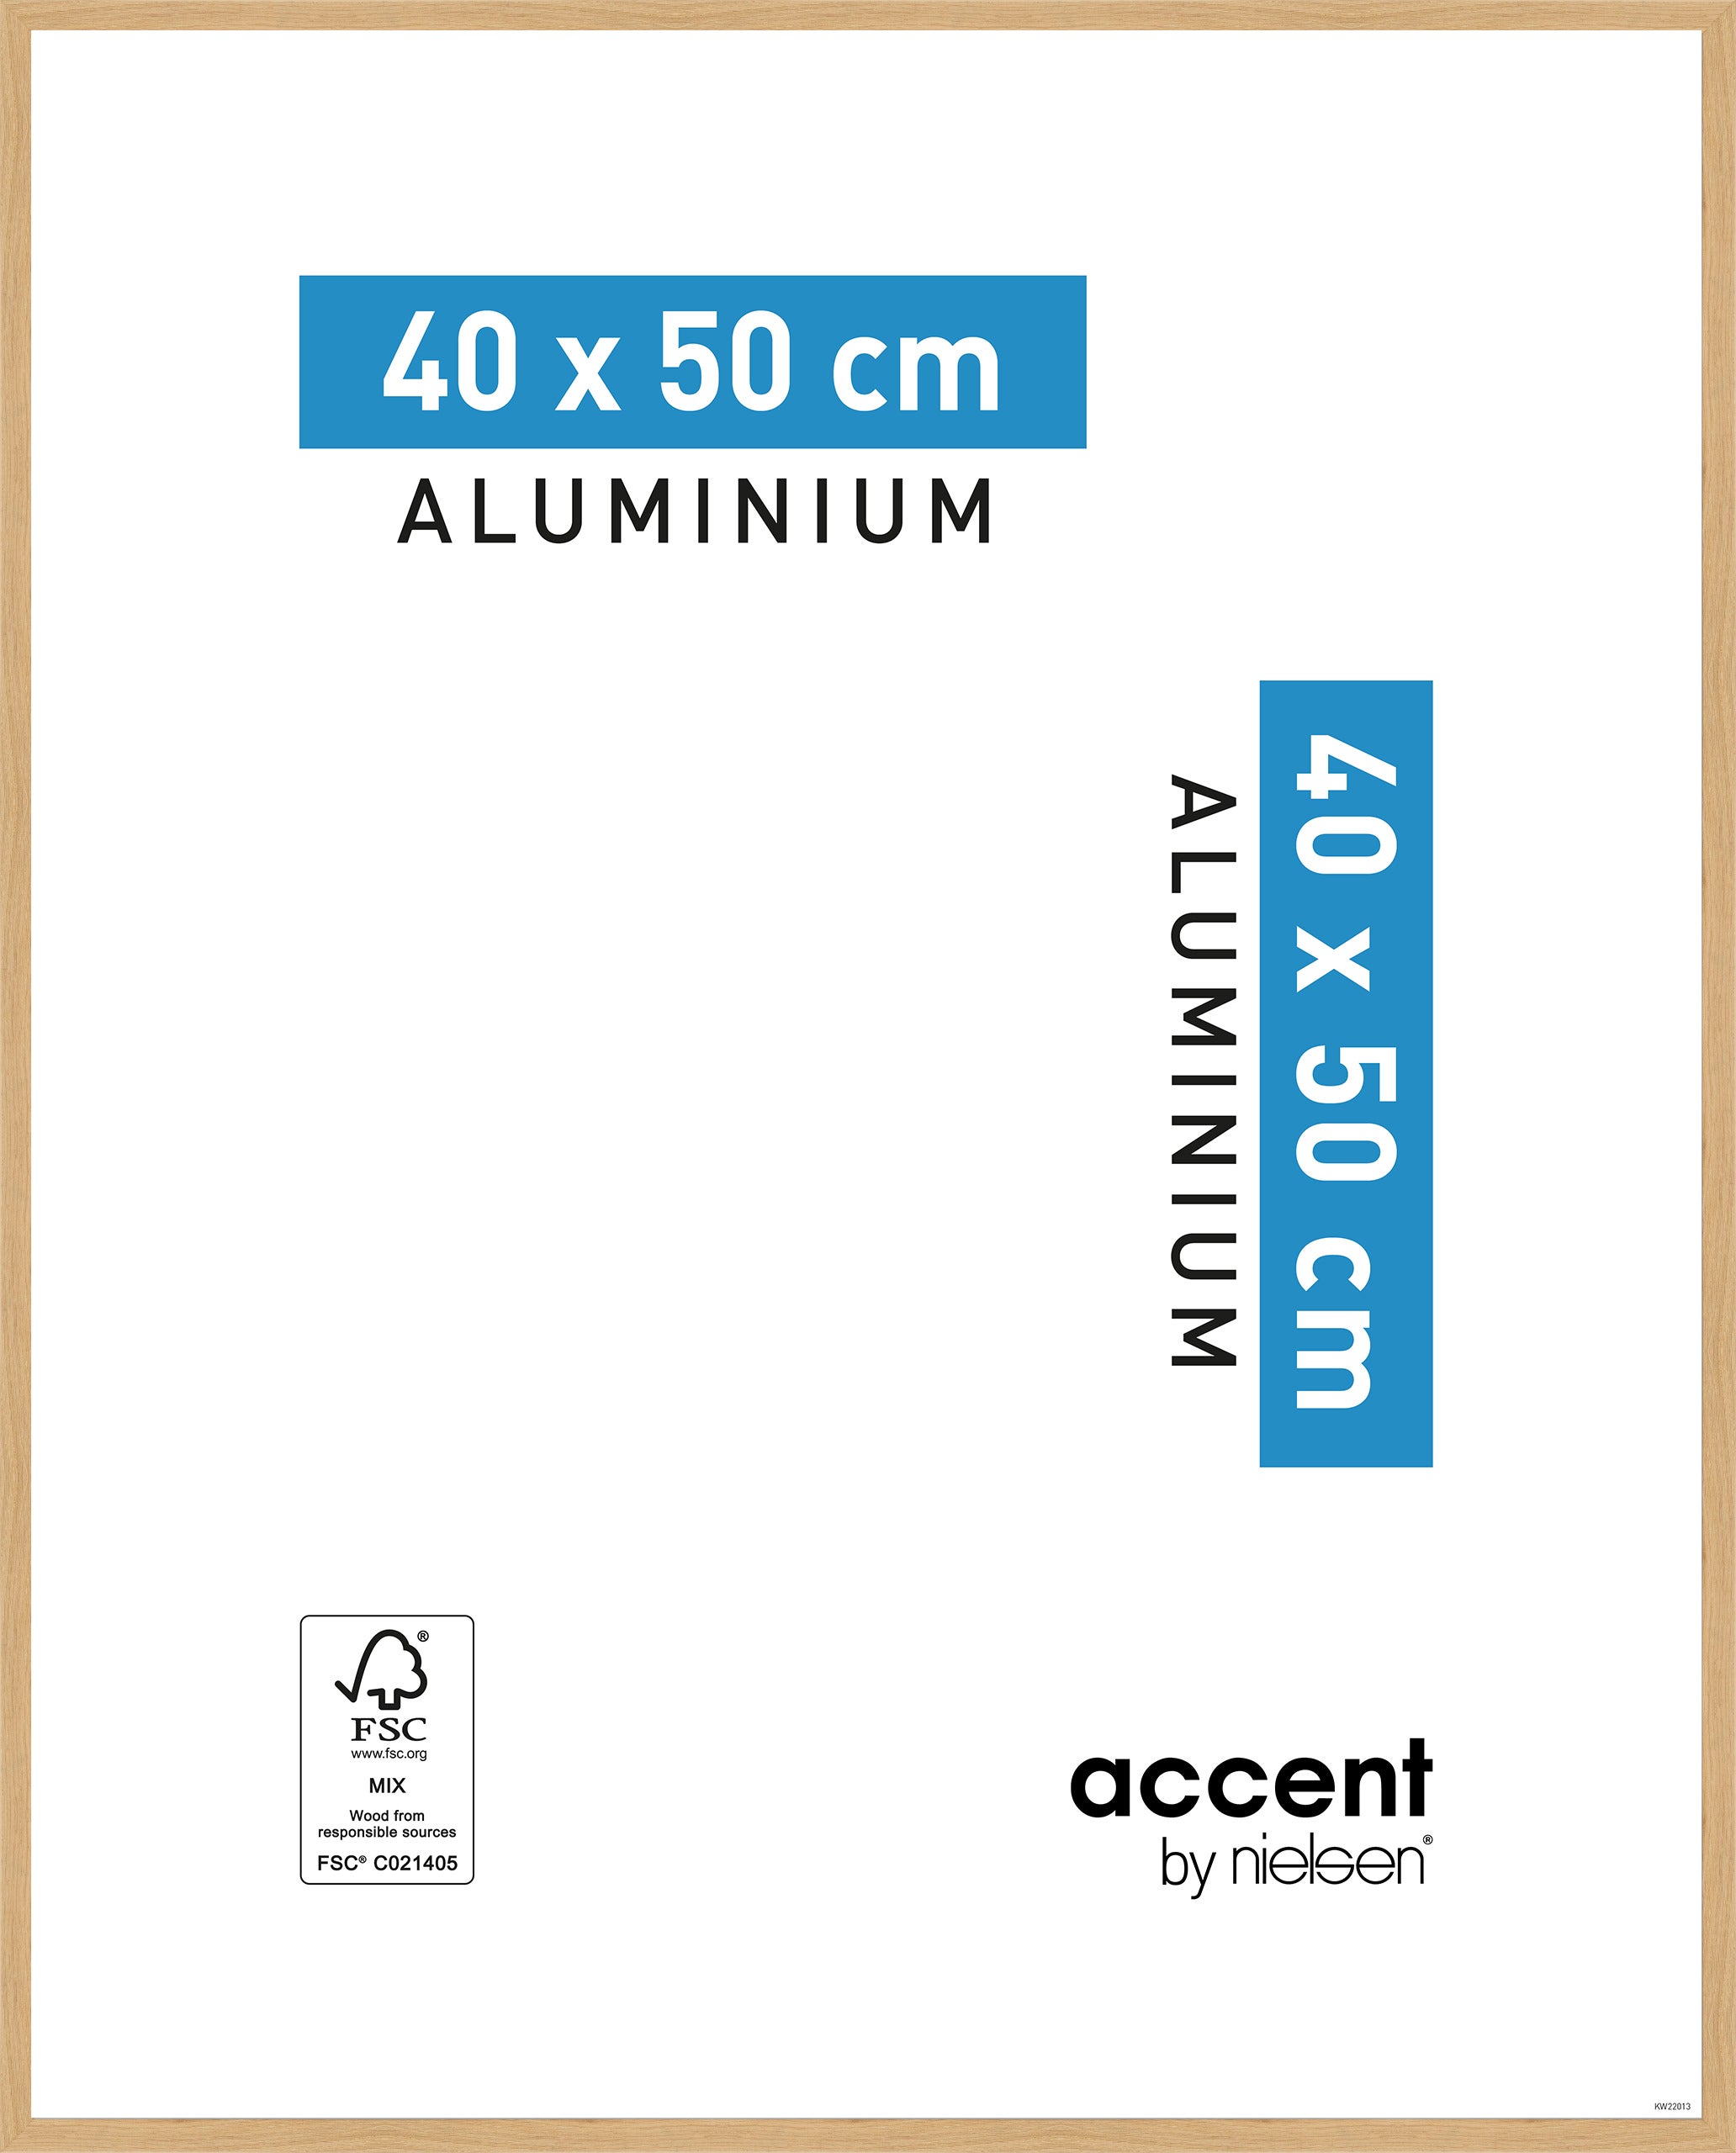 40x50 cm pour Tableaux en Format 30x40 cm Deha Passe-Partout Noir